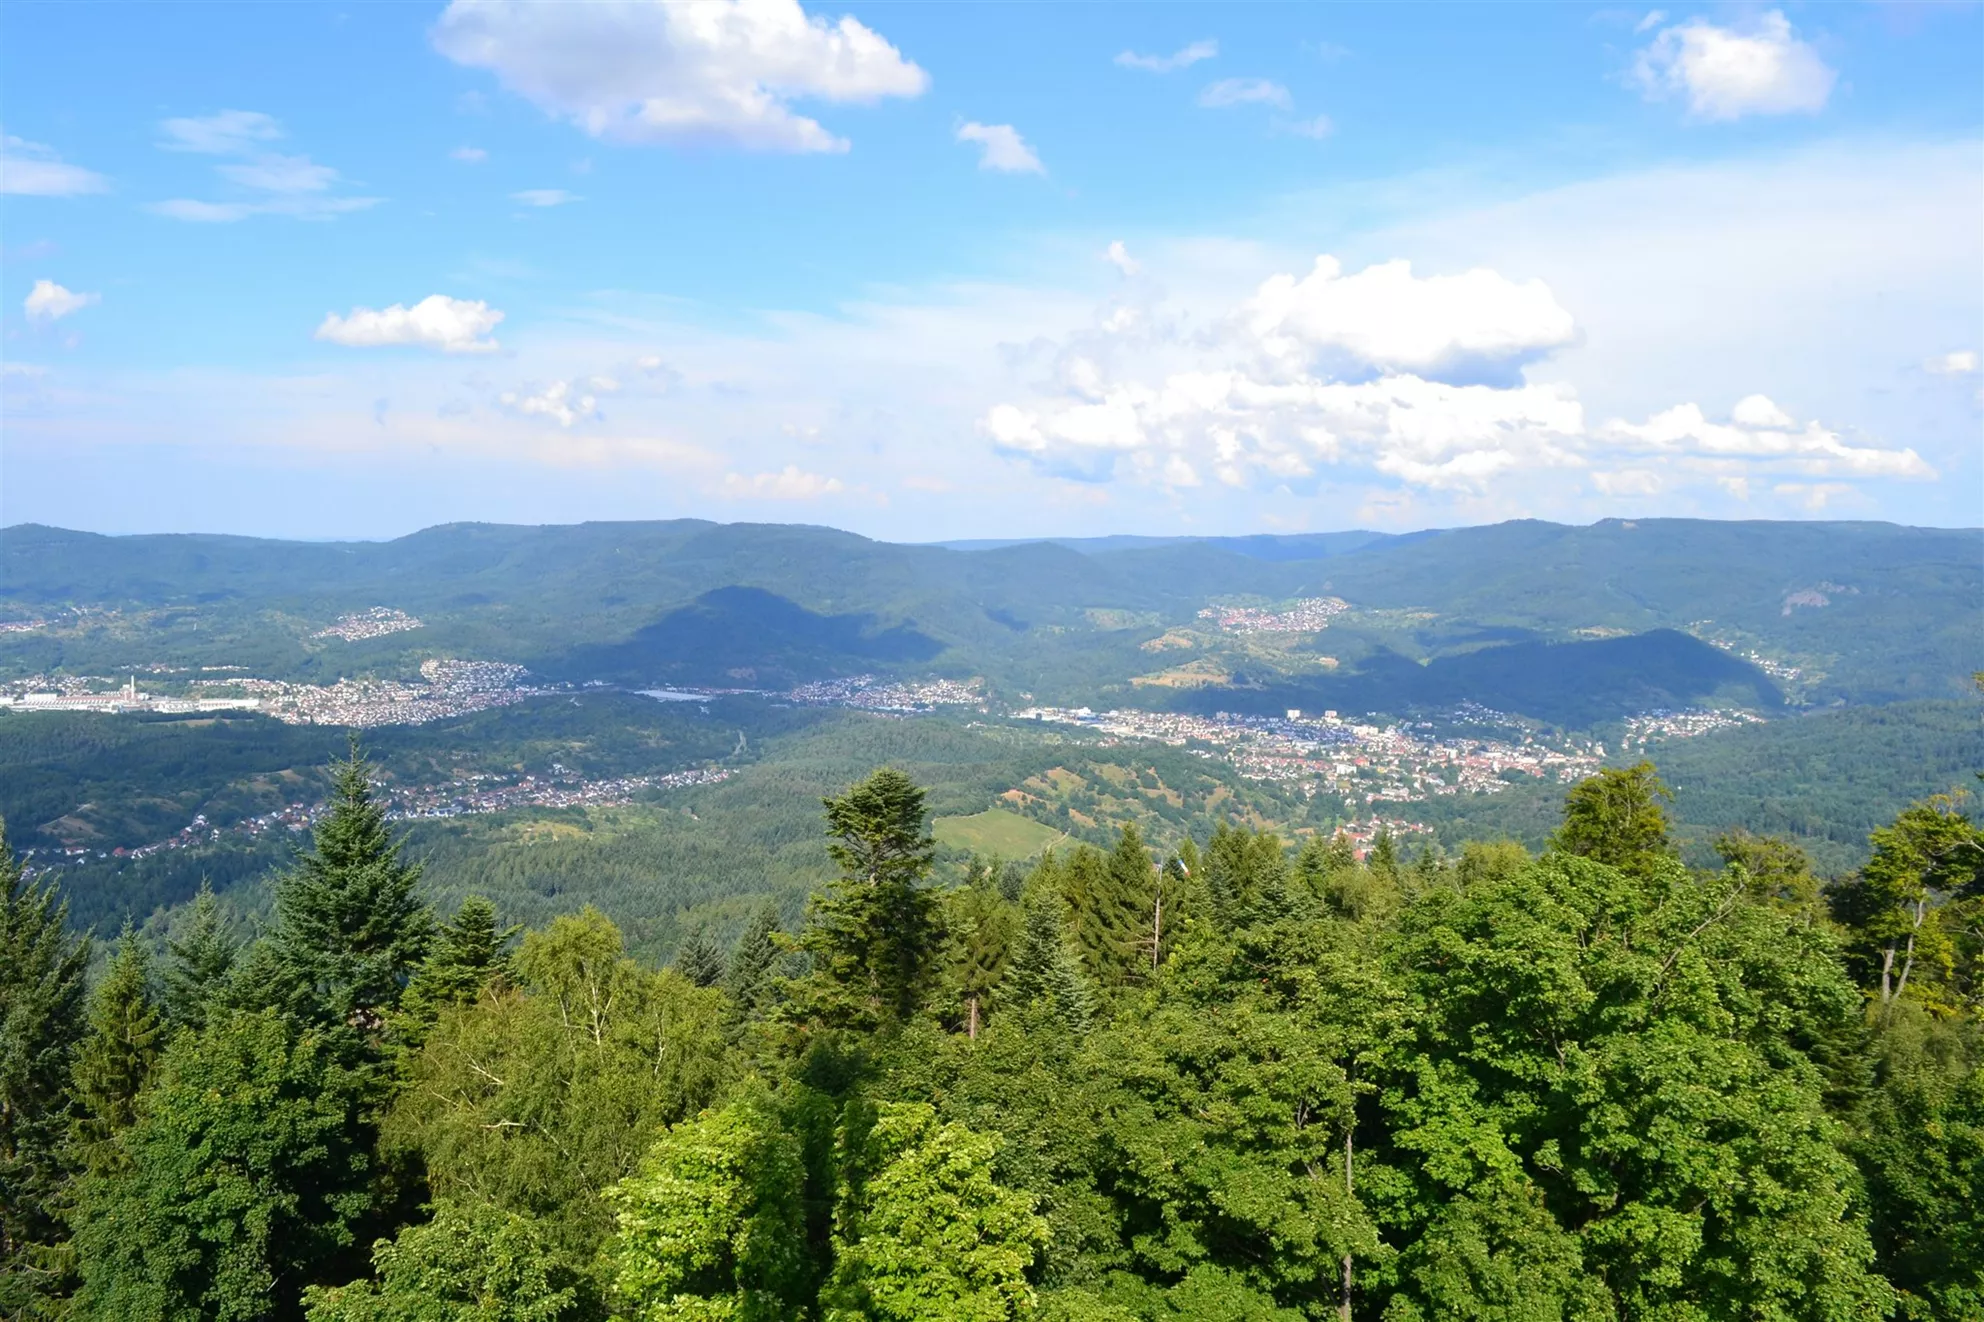 View of Baden-Baden